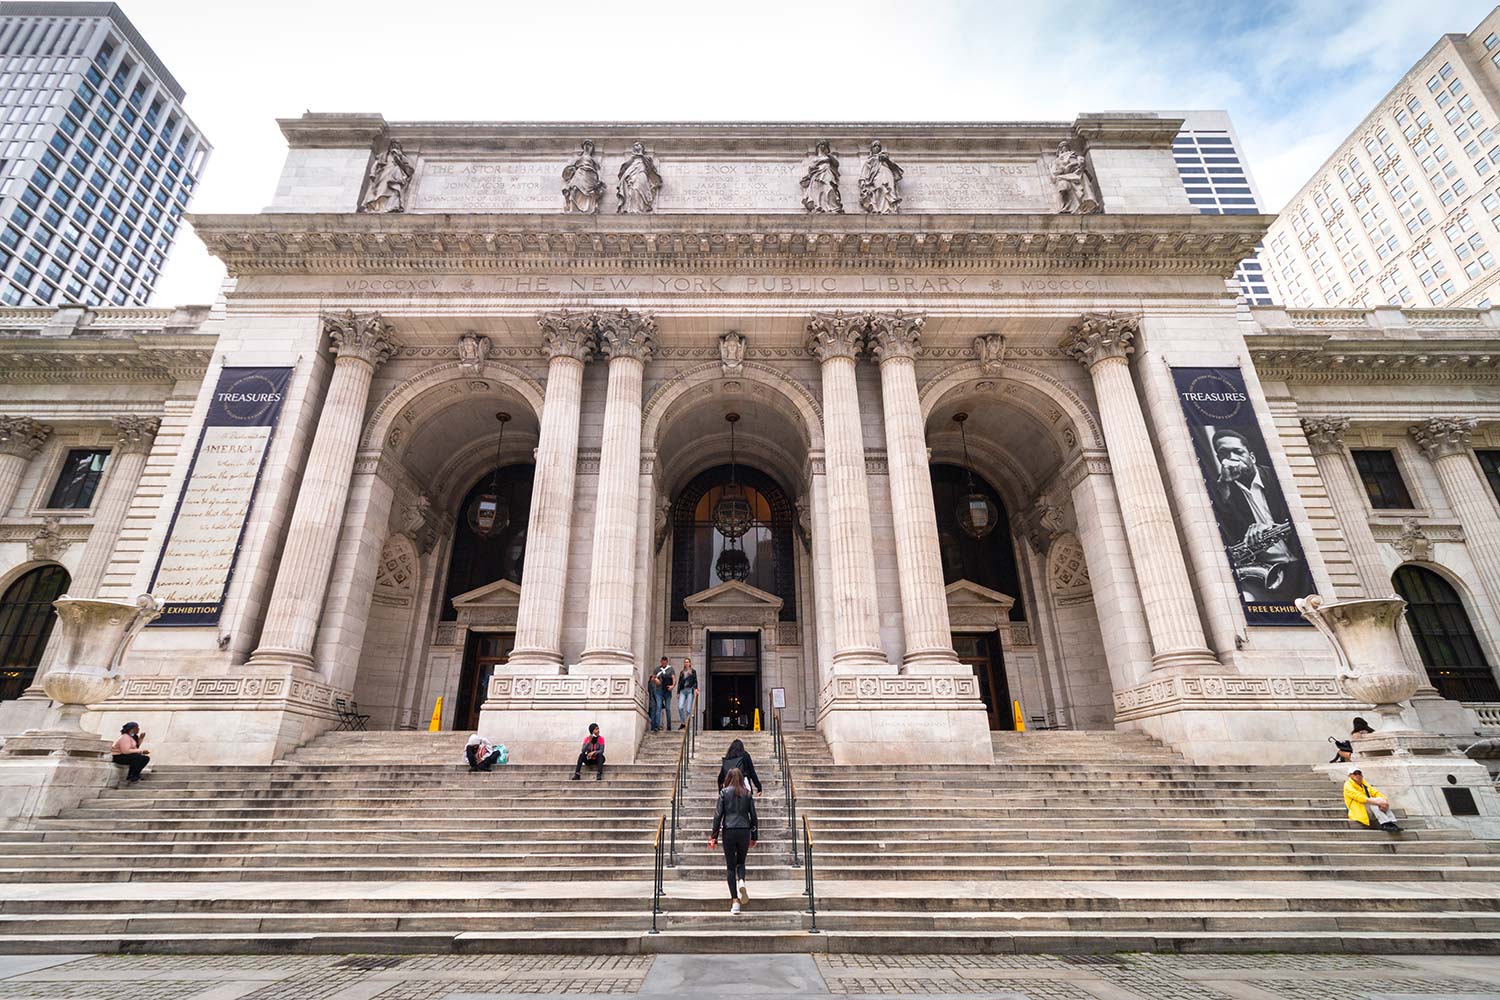 Bibliothèque publique de New York, Édifice Stephen A. Schwarzman, États-Unis / New York Public Library, Stephen A. Schwarzman Building, NYC, USA